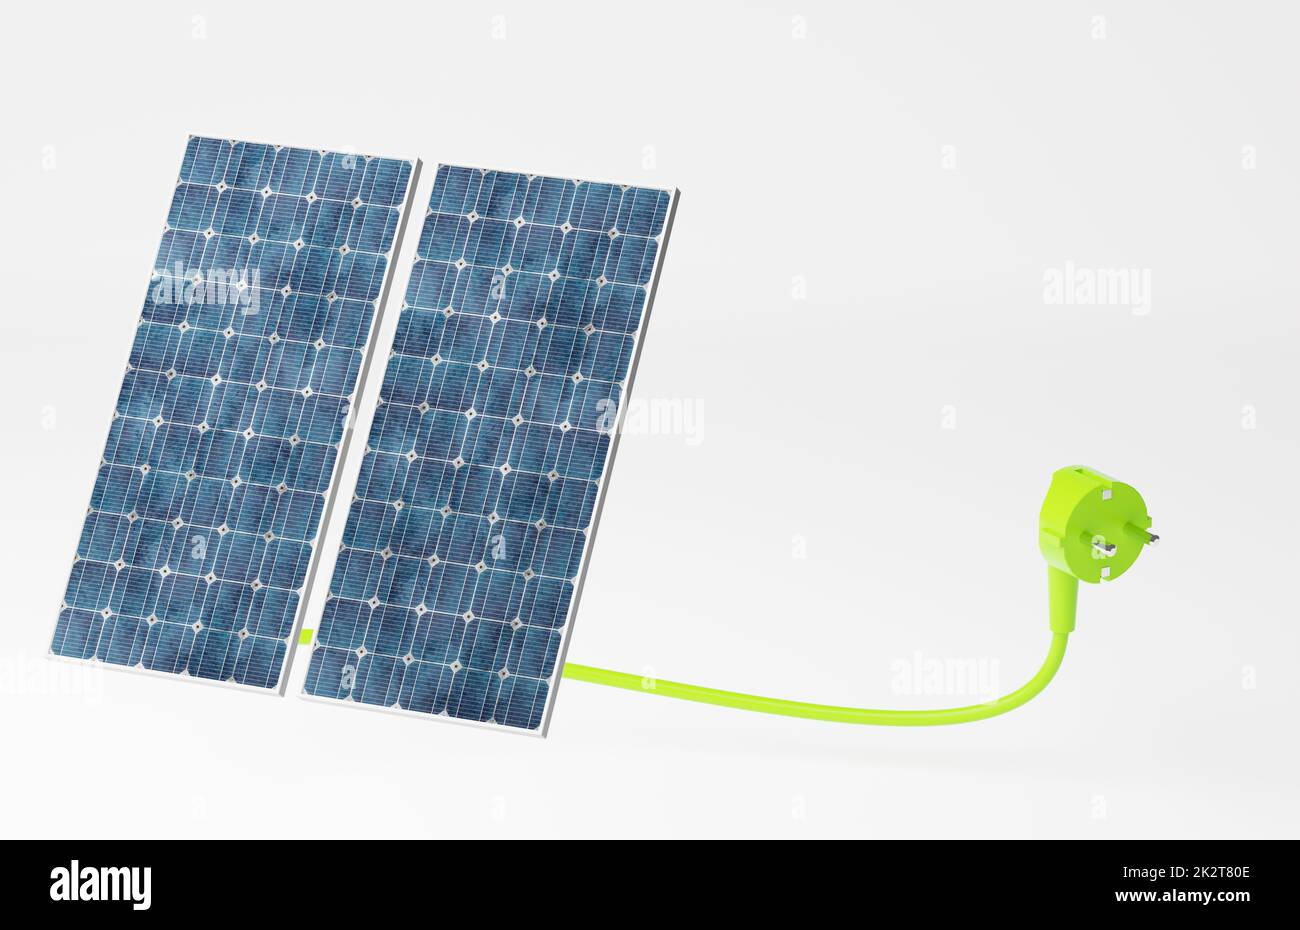 Spina verde con due pannelli solari, concetto di energia verde, transizione energetica, elettricità rinnovabile. Foto Stock